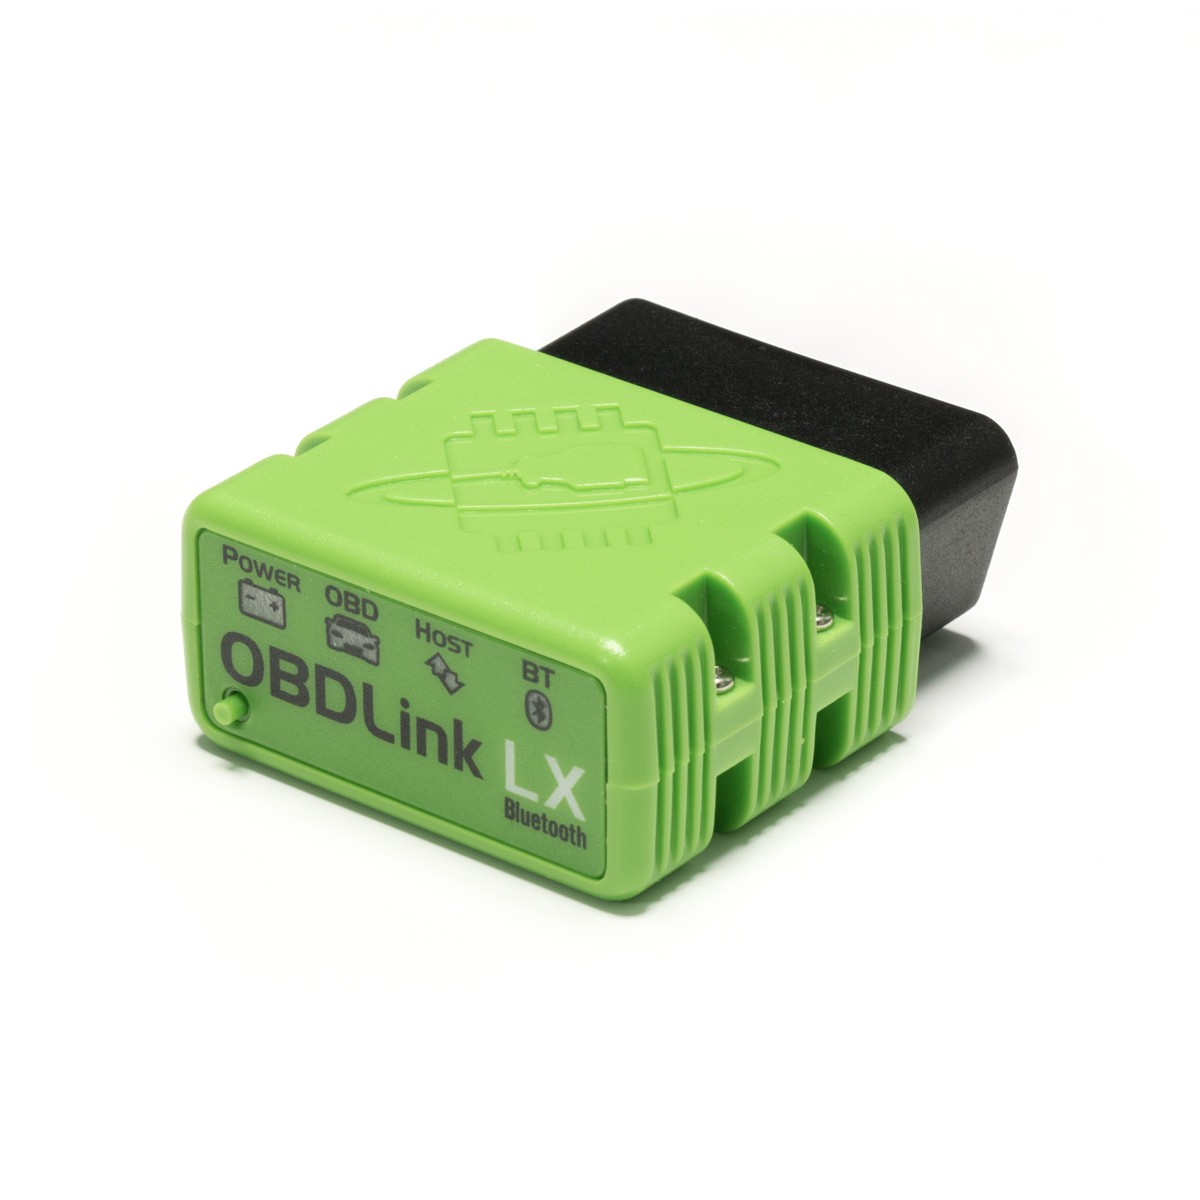 OBDLink LX Bluetooth - Outil de diagnostique OBD2 pour Android et